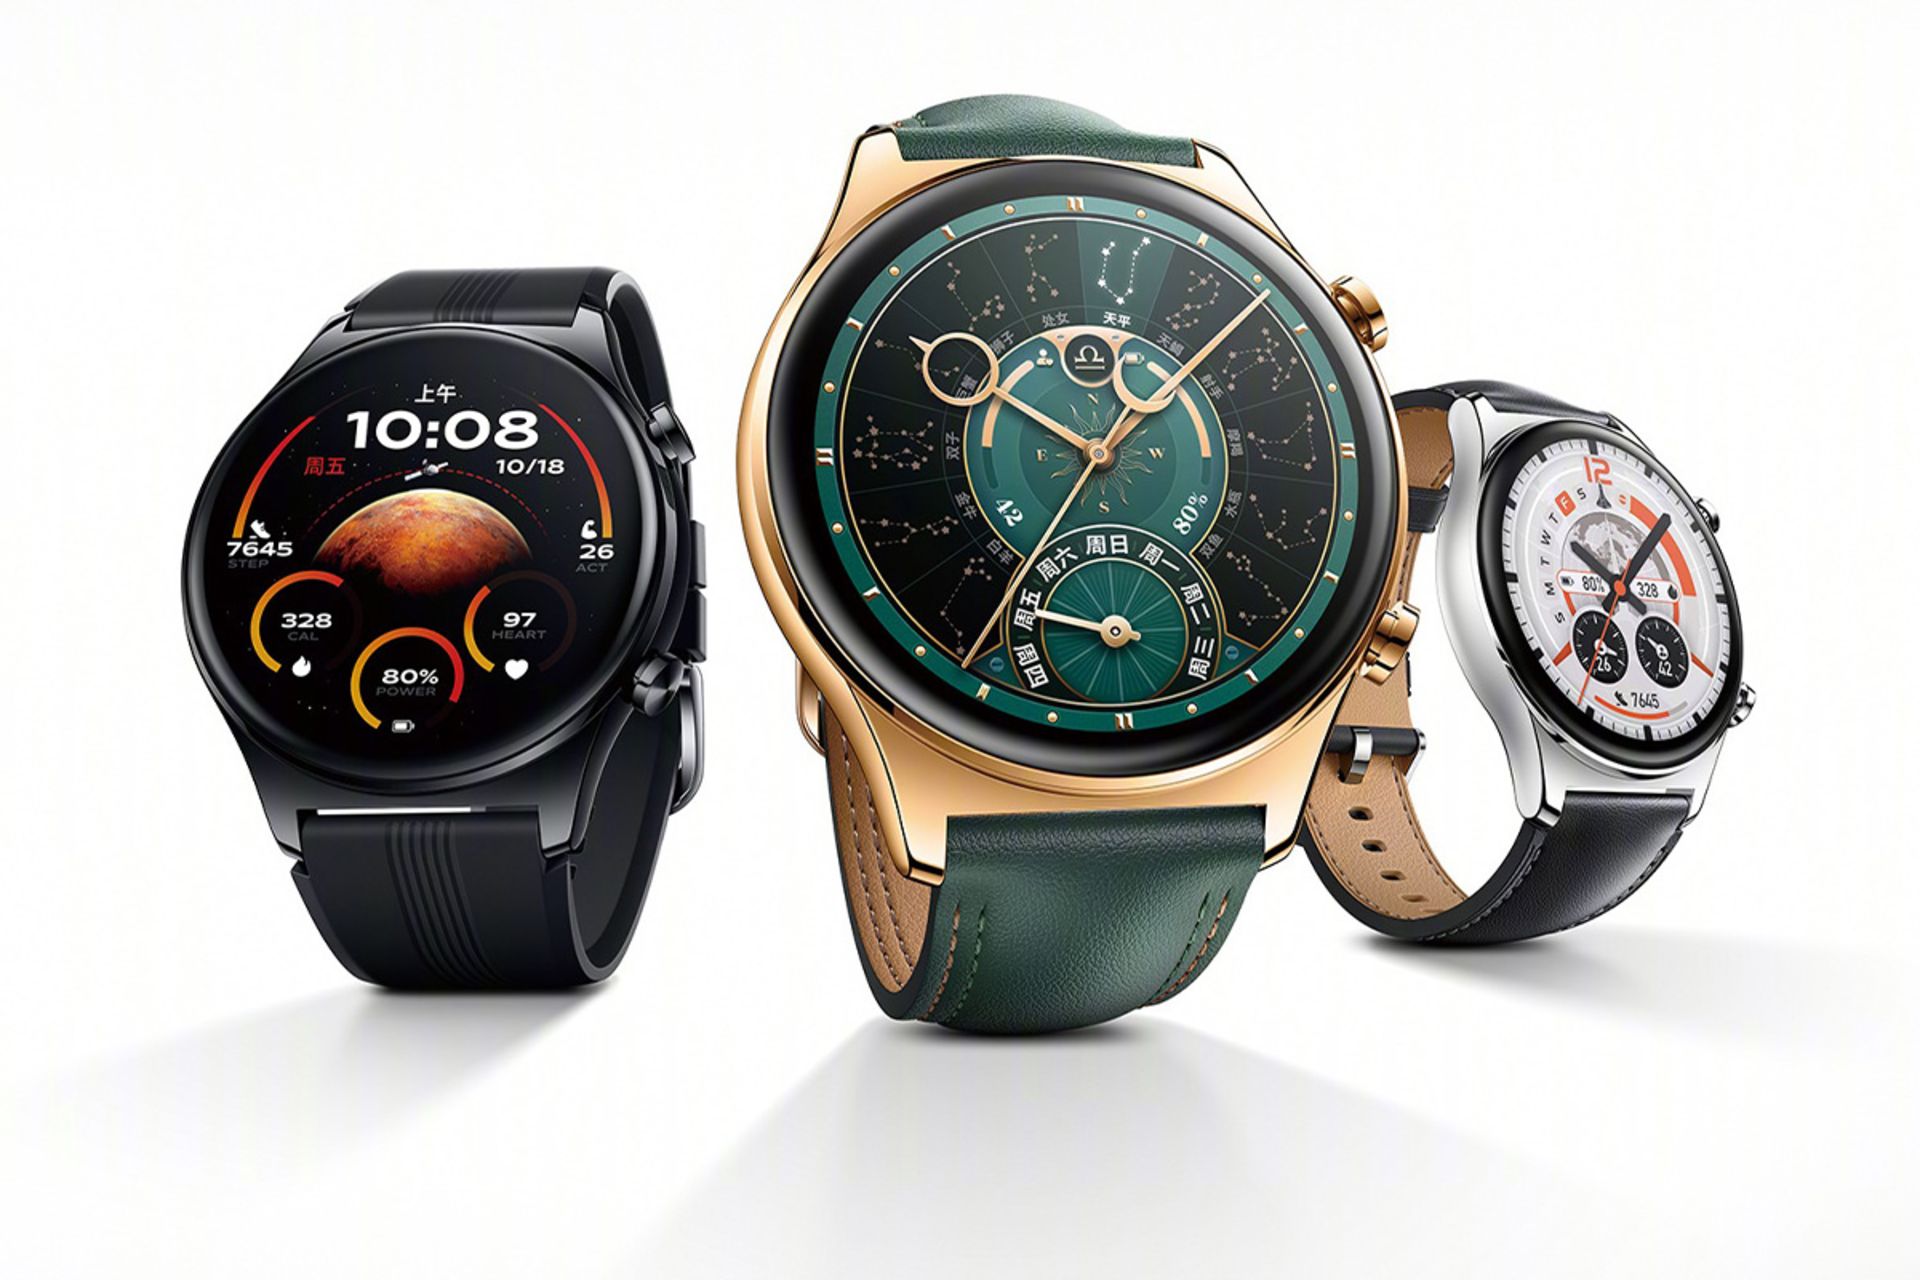 ساعت هوشمند آنر GS 4 در سه رنگ صدفی، مشکی و بژ